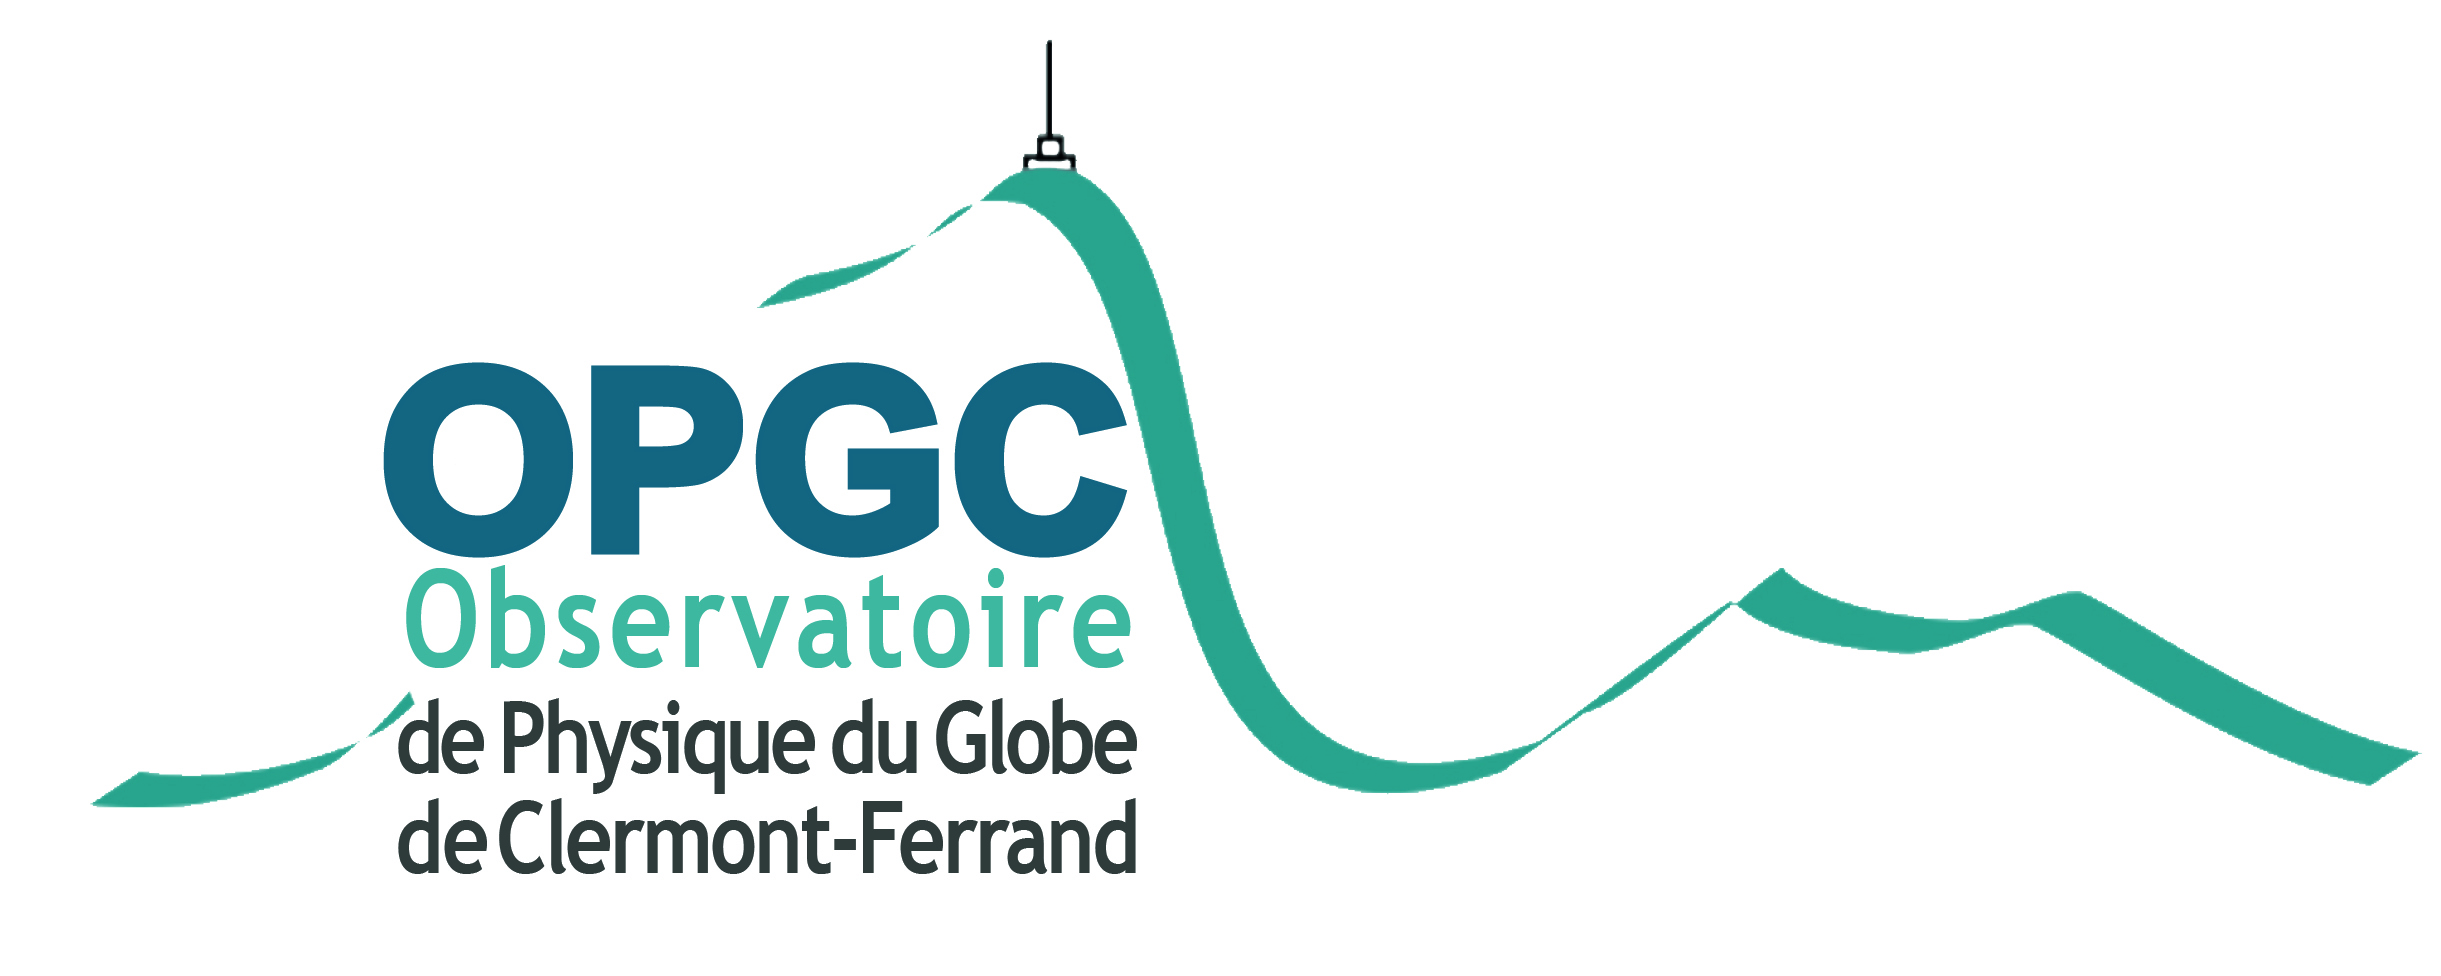 OPGC logo